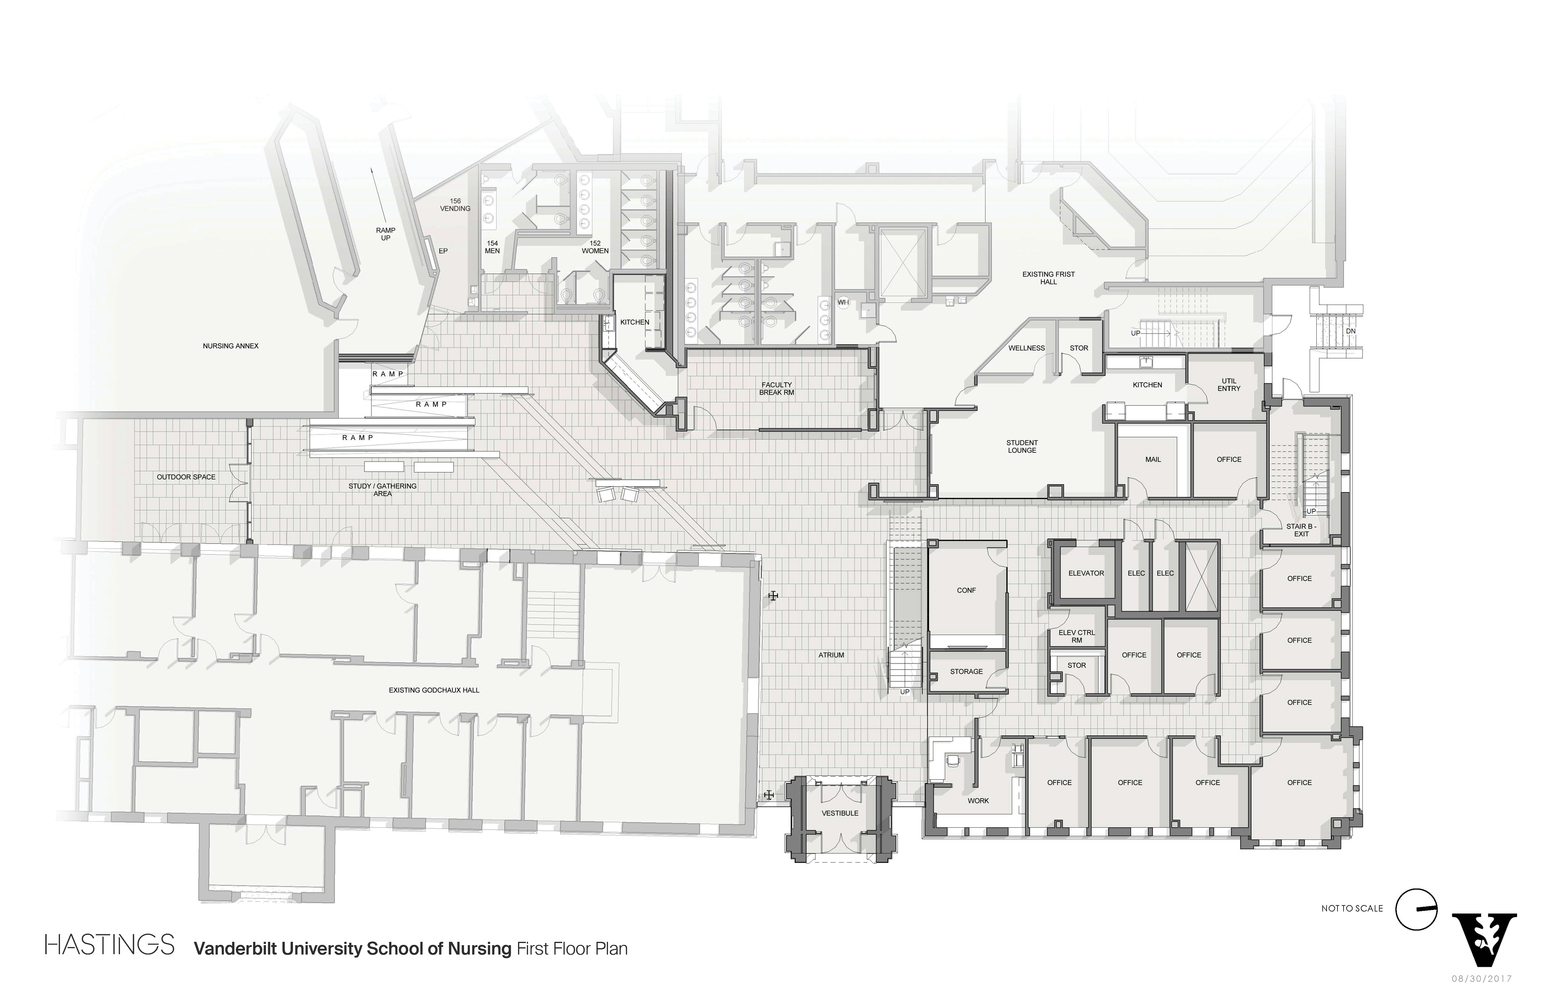 01_Vanderbilt_University_School_of_Nursing_First_Floor_Plan.jpg